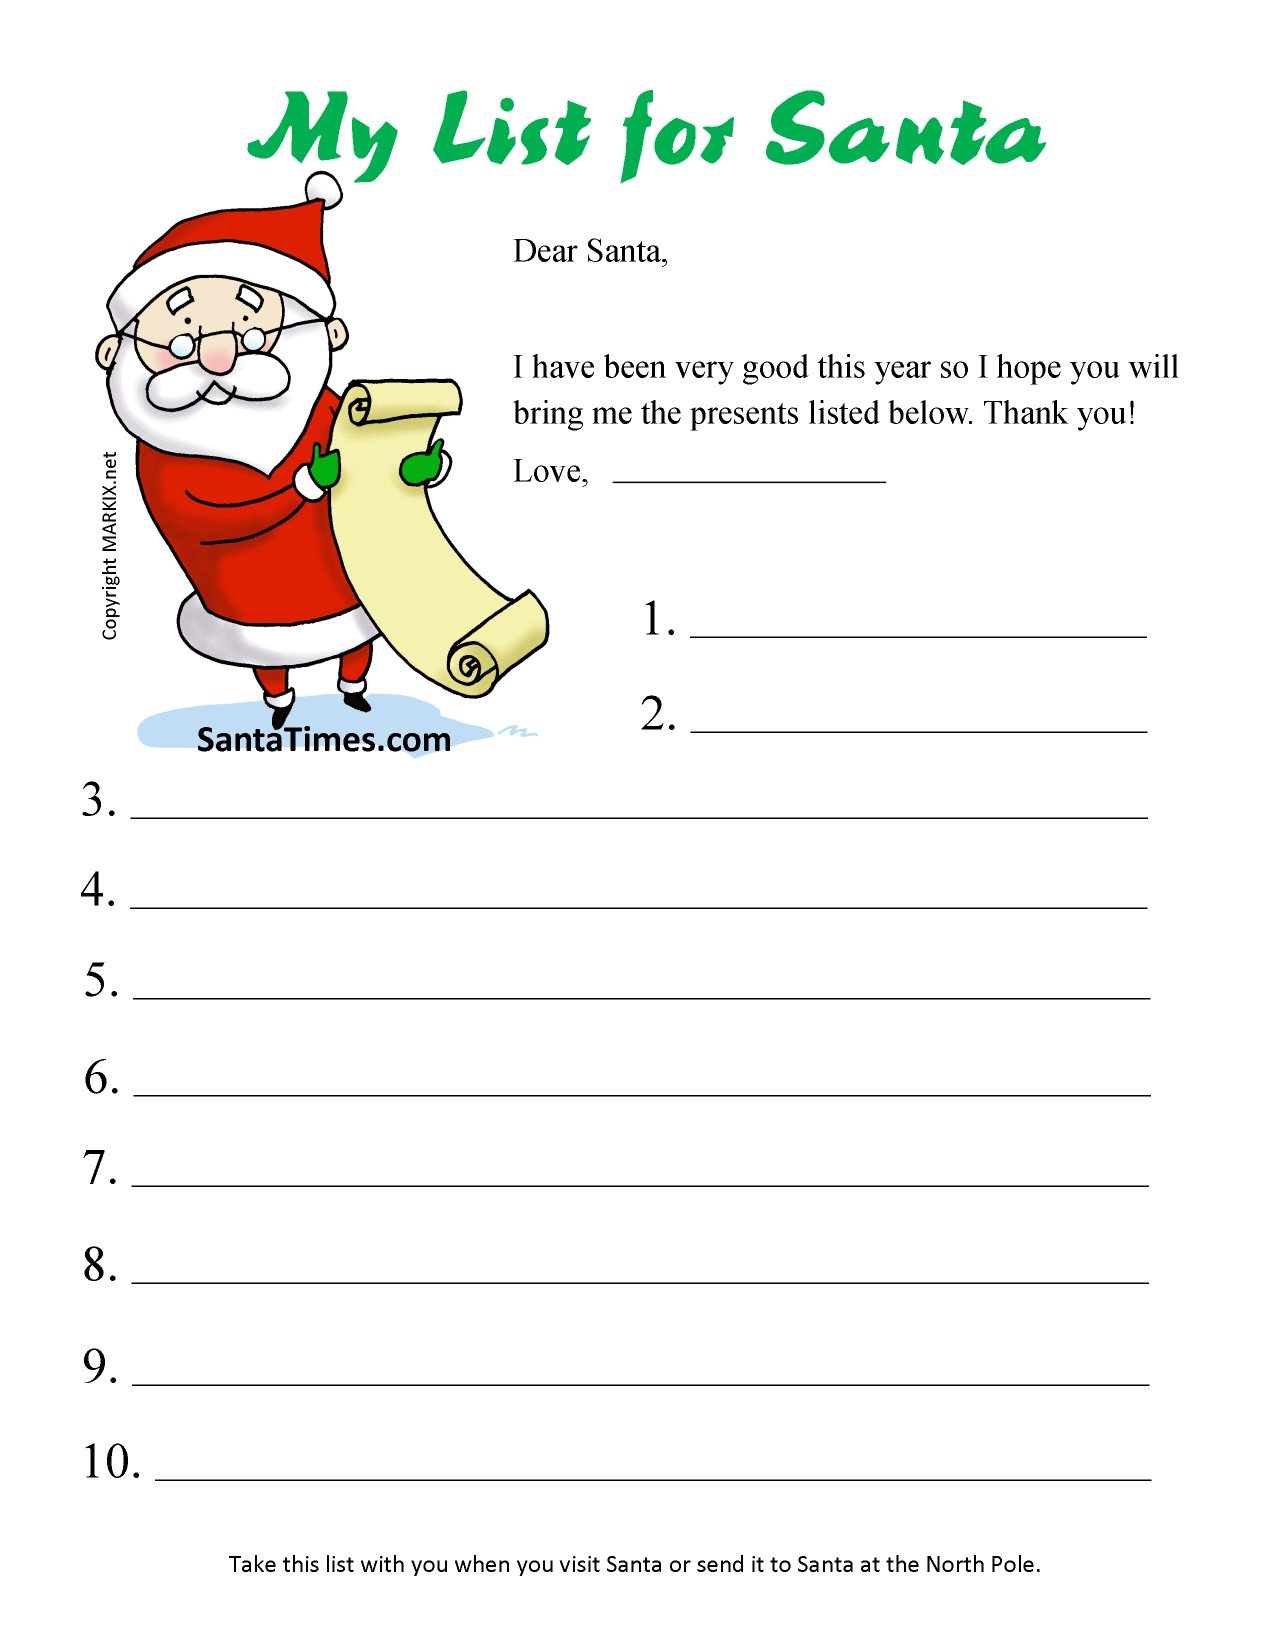 Print Your Christmas Wish List for Santa